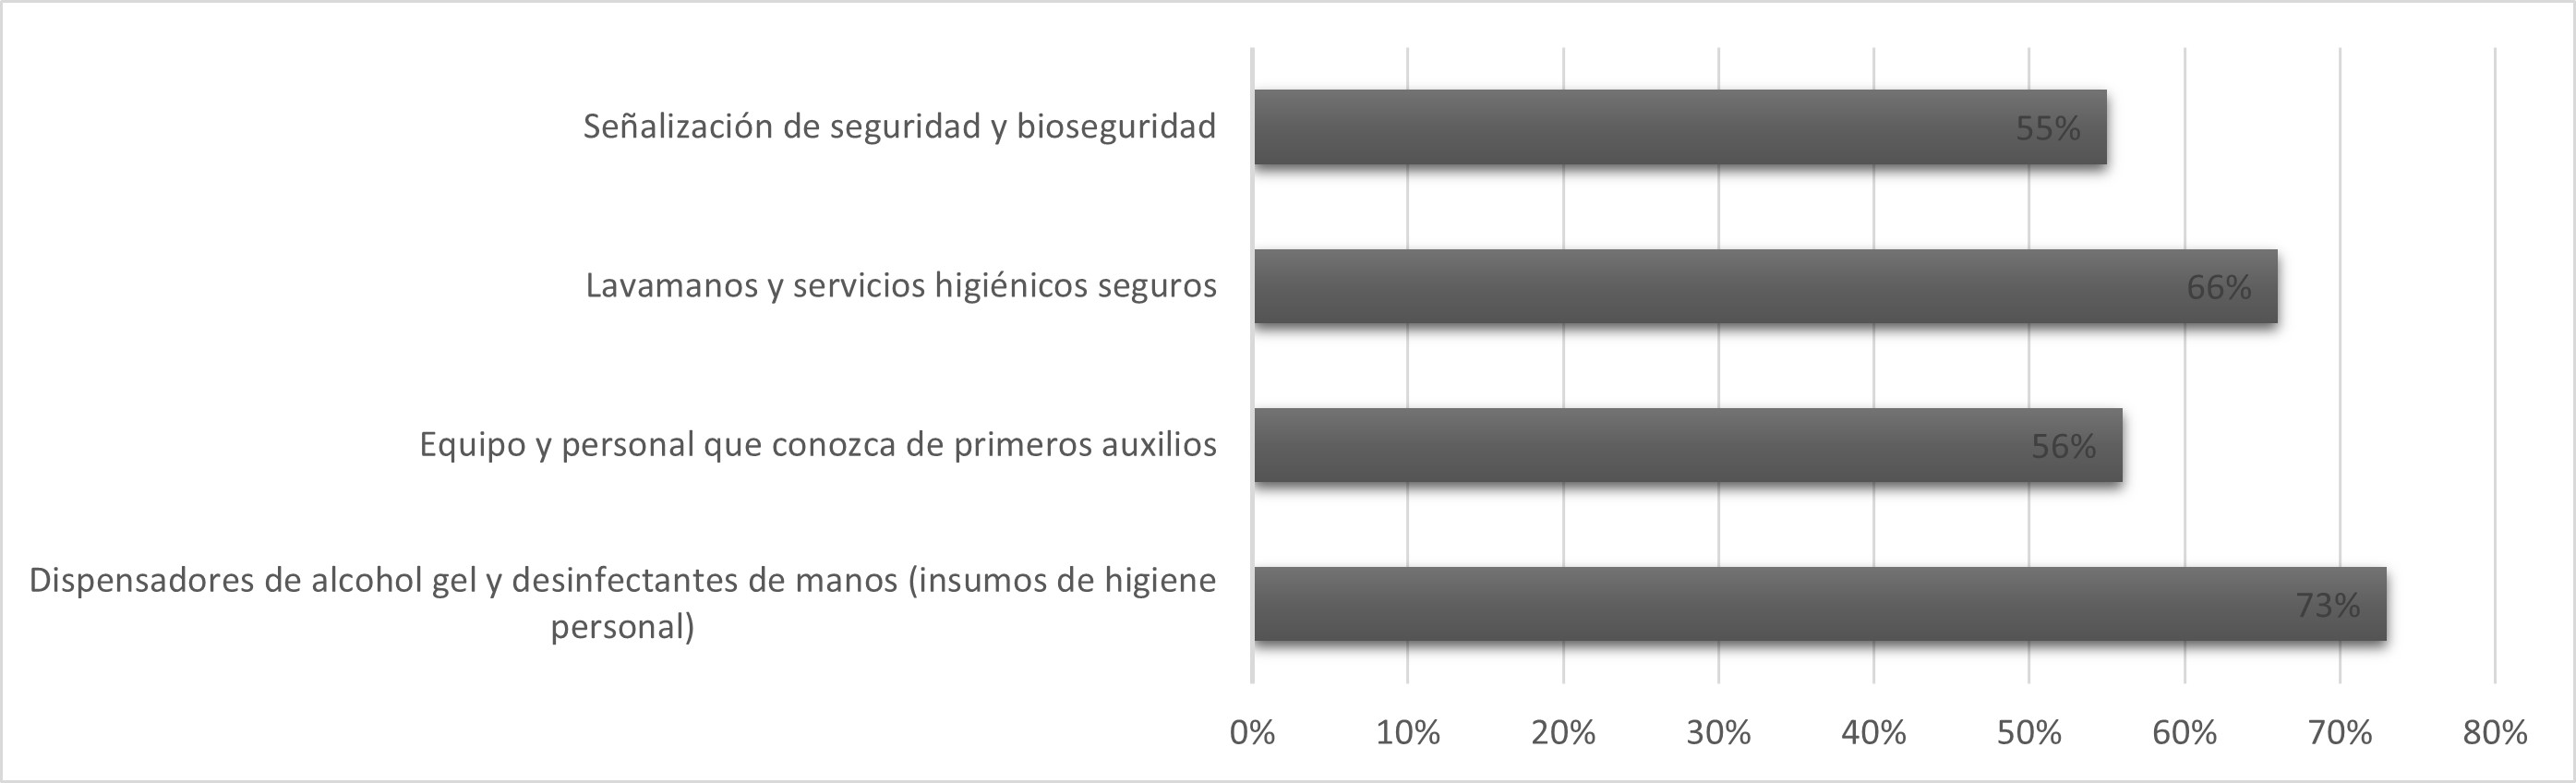 Preferencia de los visitantes de las medidas para el mejoramiento de la infraestructura de seguridad y bioseguridad en las áreas naturales protegidas en el Ecuador continental.